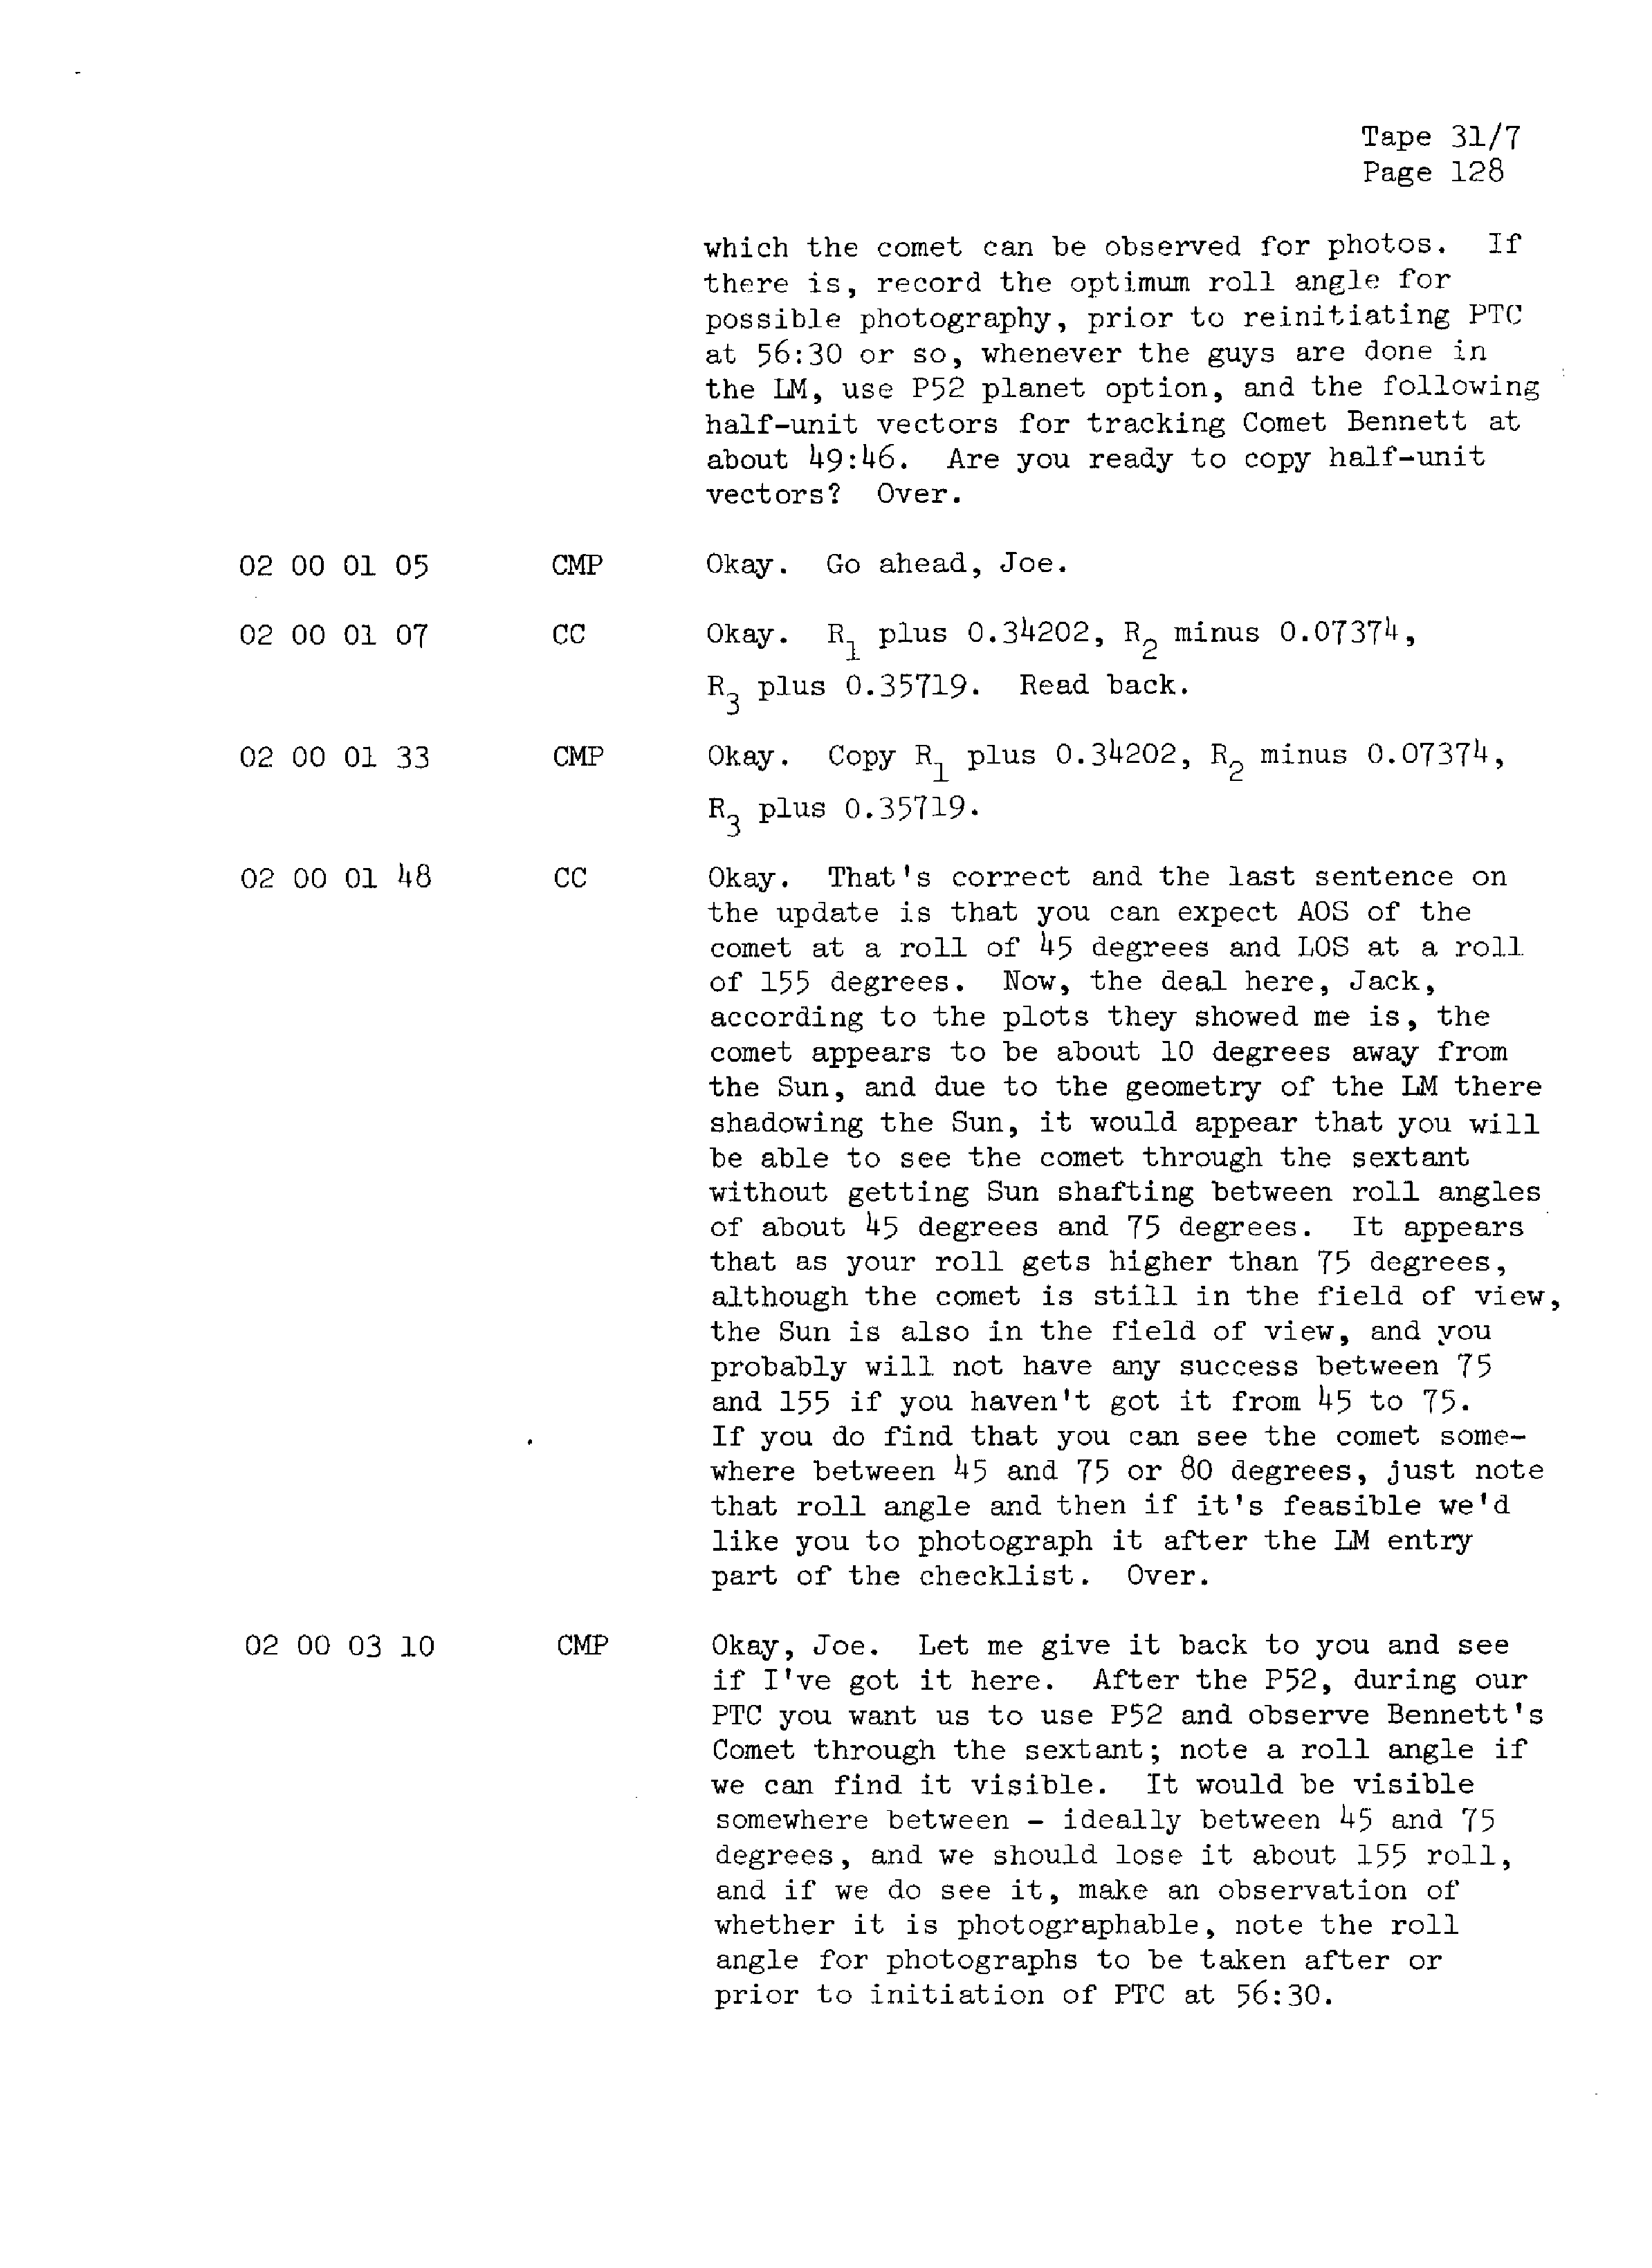 Page 135 of Apollo 13’s original transcript